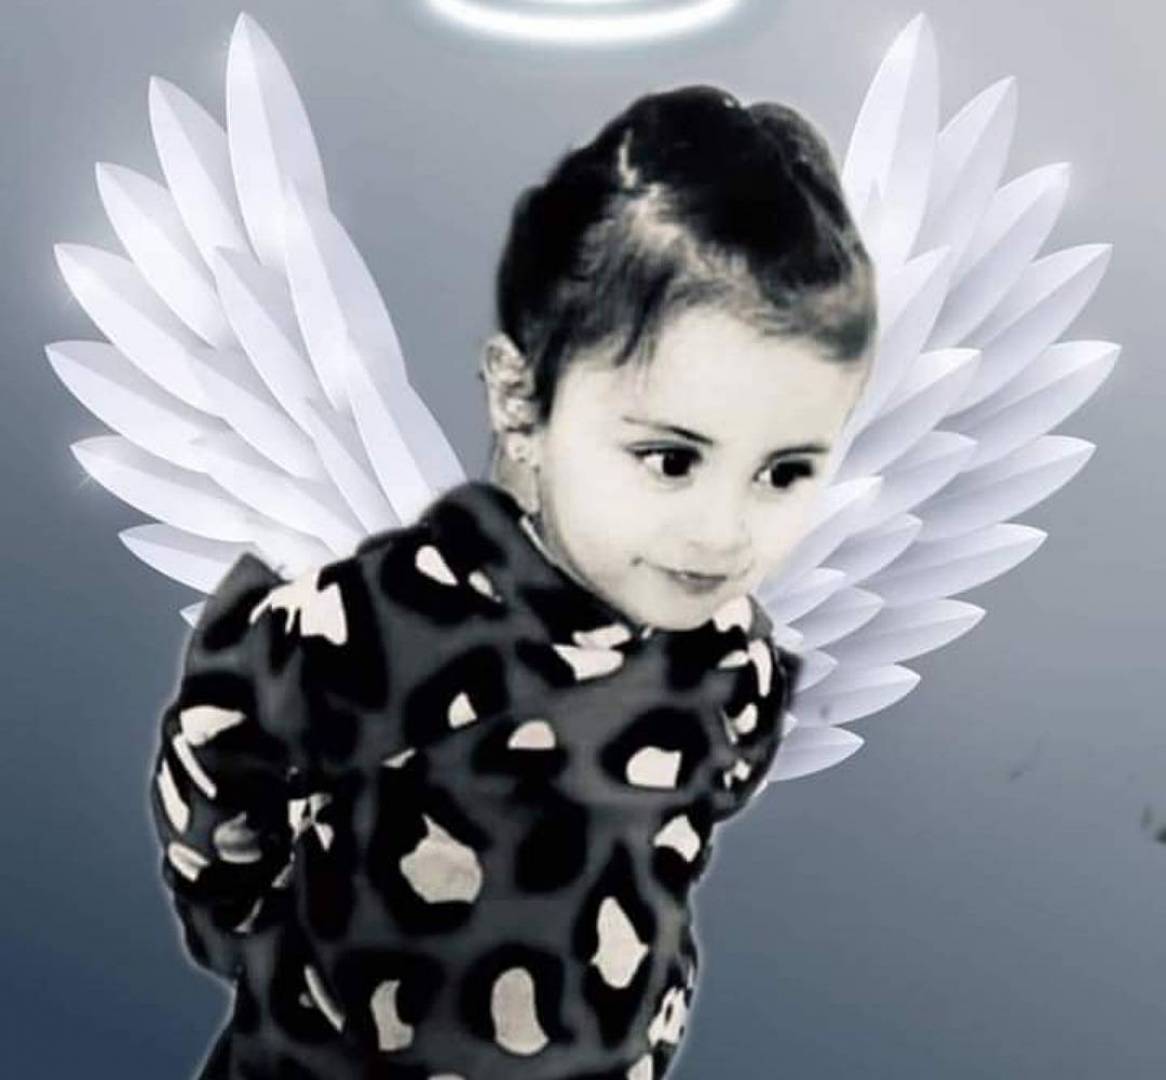 بعد 6 أيام على فقدانها...العثور على الطفلة جوى استبولي مشوهة الوجه في مكب نفايات بحمص السورية